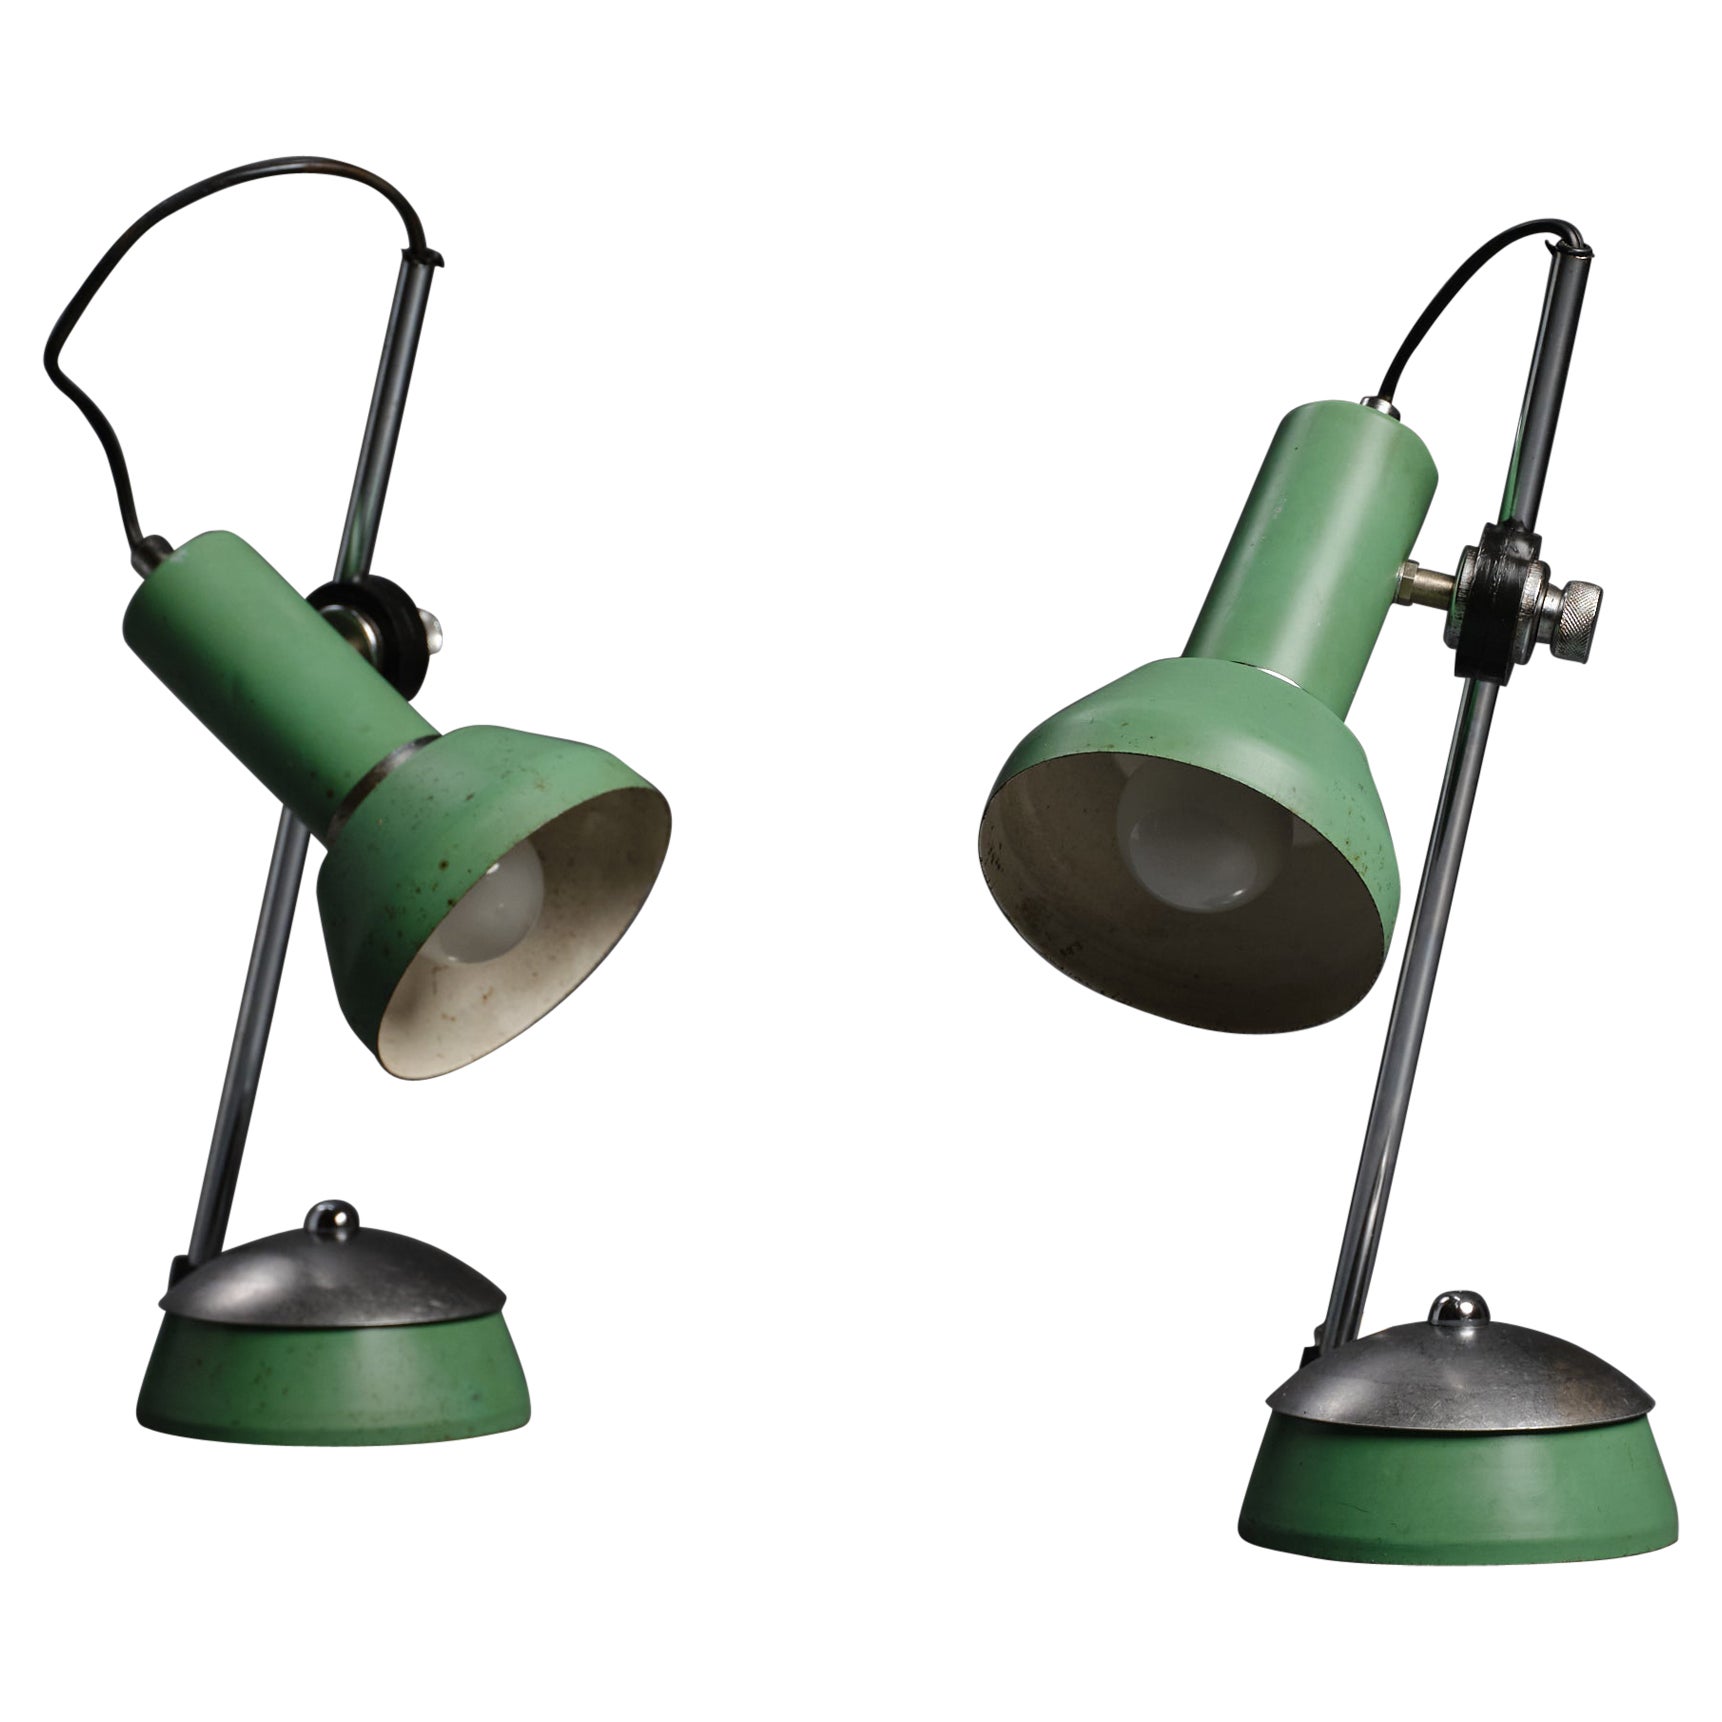 Grüne Vintage-Tischlampen aus den 70ern mit modernem Design und Stahldetails